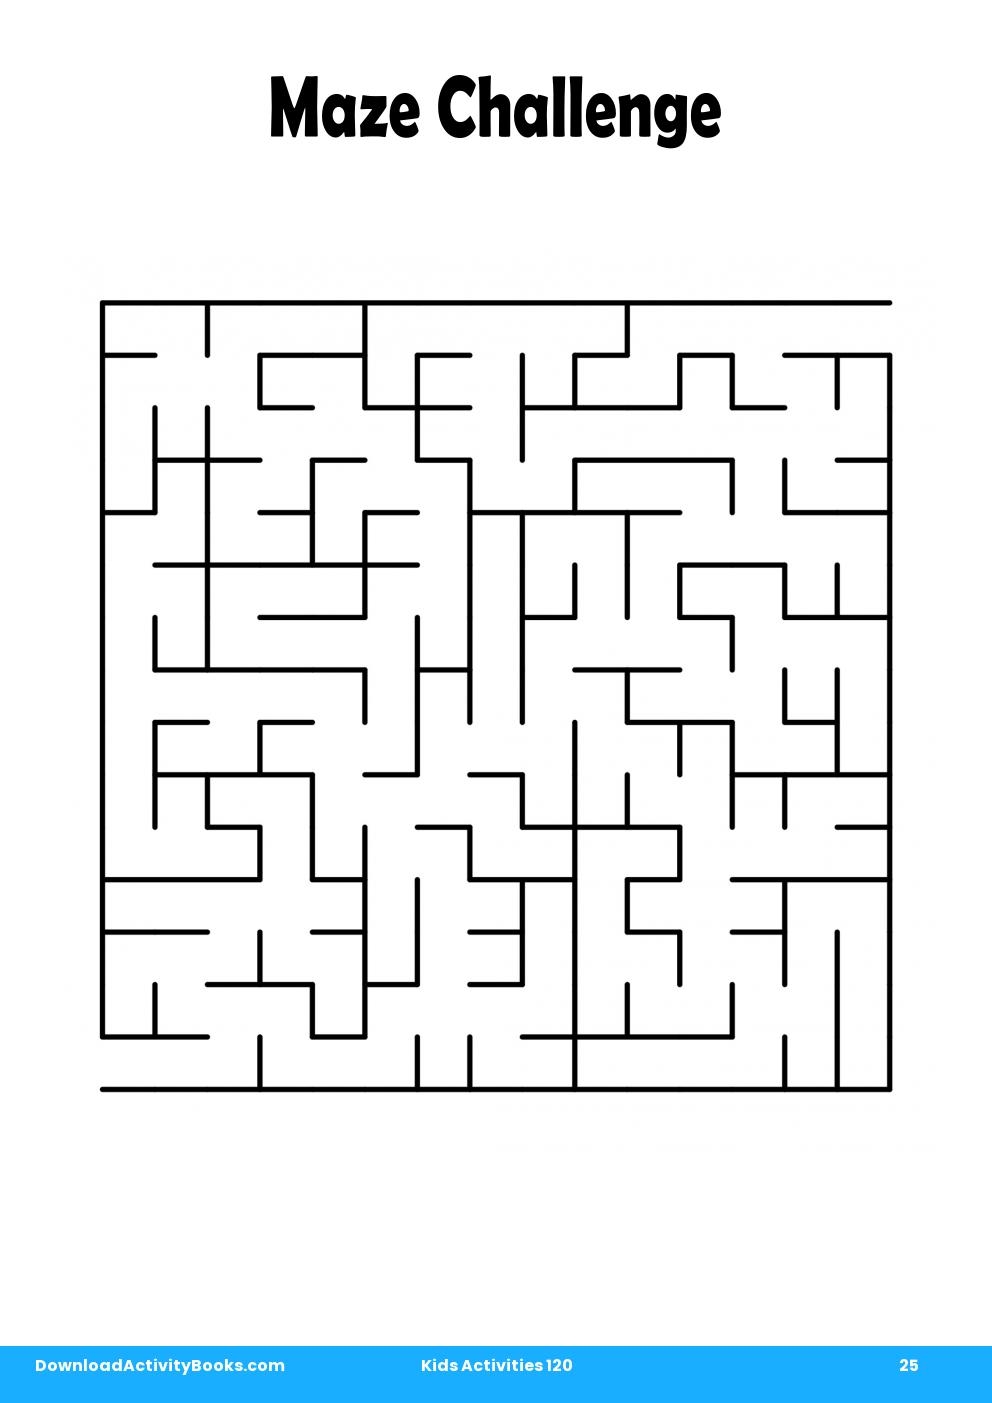 Maze Challenge in Kids Activities 120